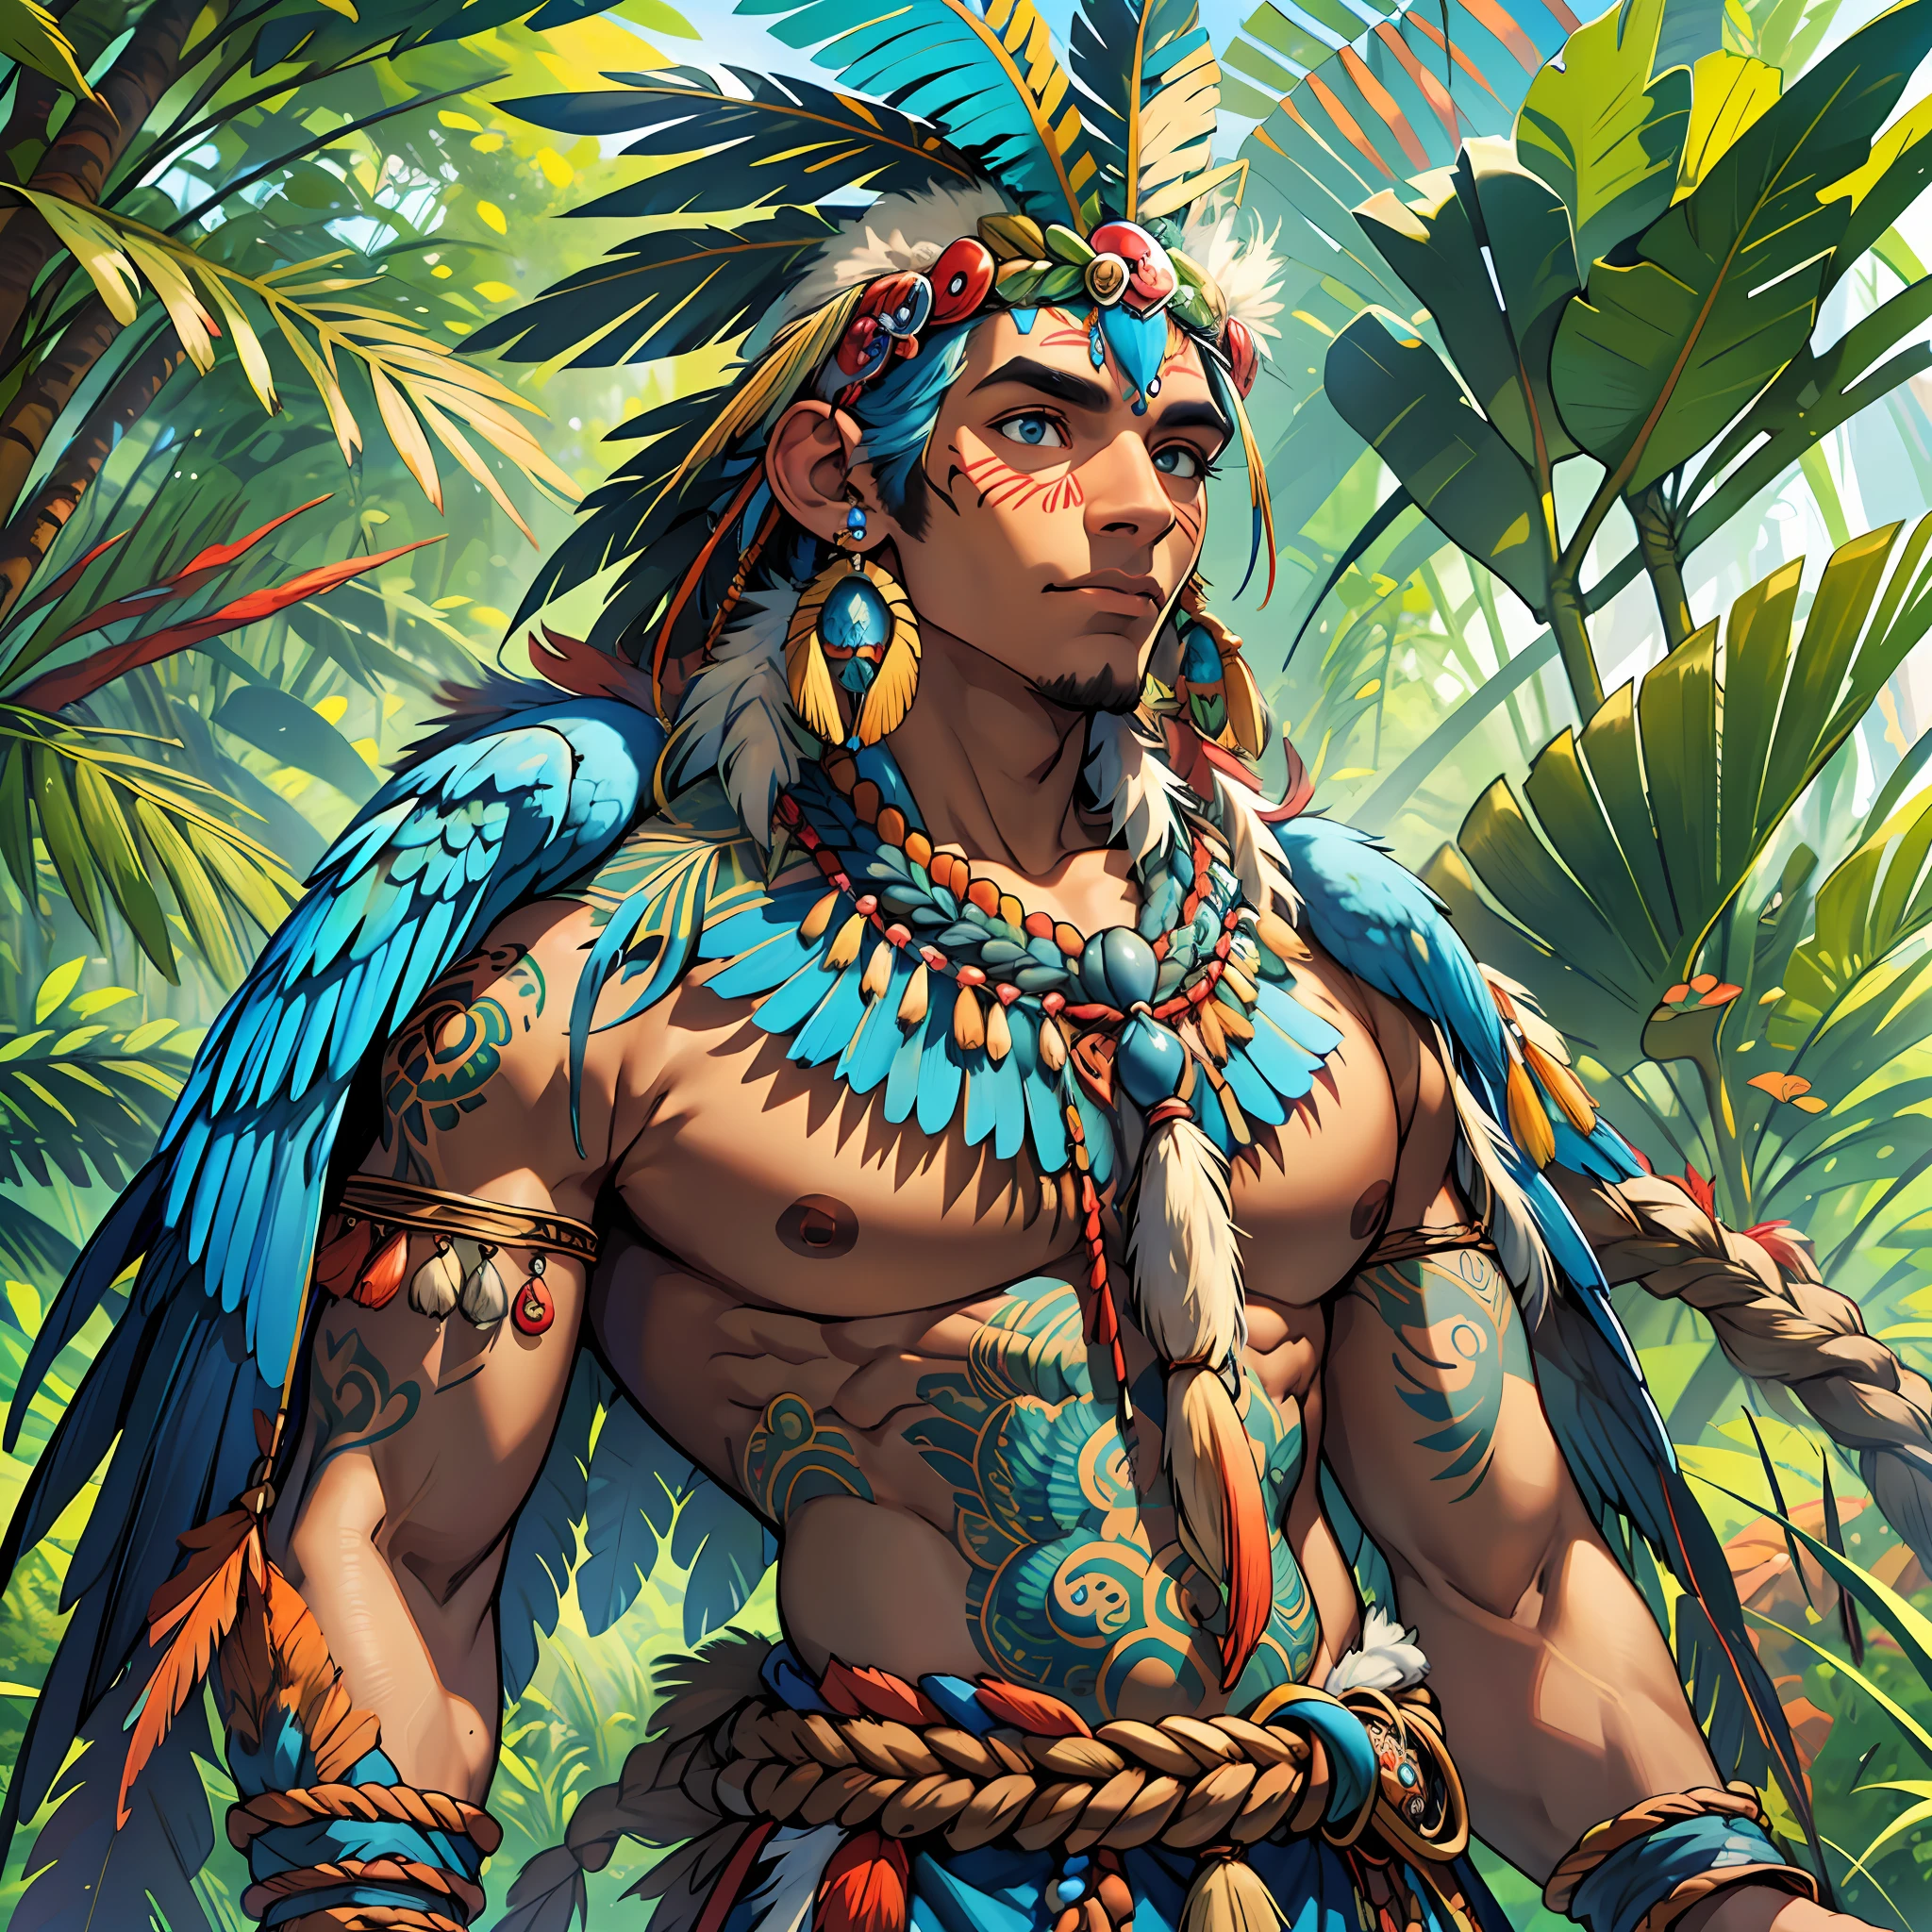 Anthropozoomorpher humanoider Gott mit brauner Haut, blauen Ara-Flügeln und menschlichem Körper sowie einigen blauen Ara-Federn am Körper, perfekter Körper, heiliger Wächter des Waldes, Brasilianisch, göttliche landschaft des amazonas, Tupi-Guarani-Kleidung